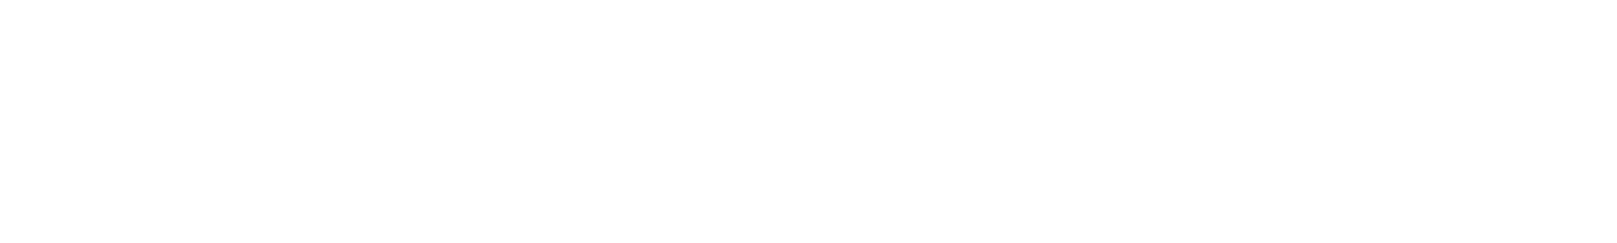 ETC 6 Meridian logo large for dark backgrounds (transparent PNG)